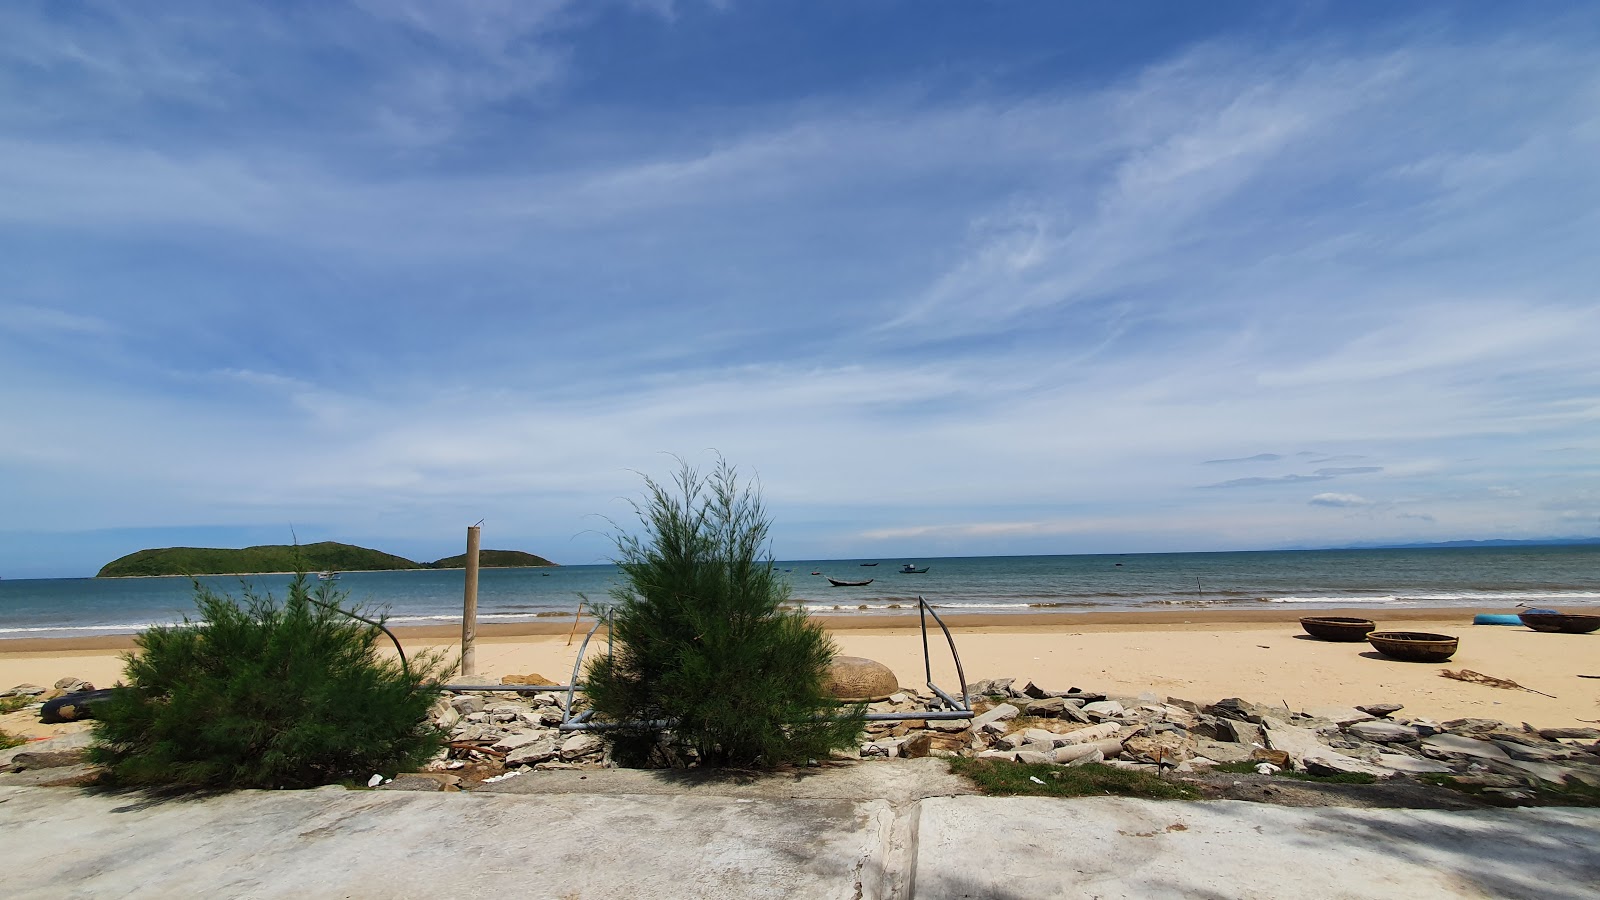 Zdjęcie Shi Hai Sea z powierzchnią jasny piasek